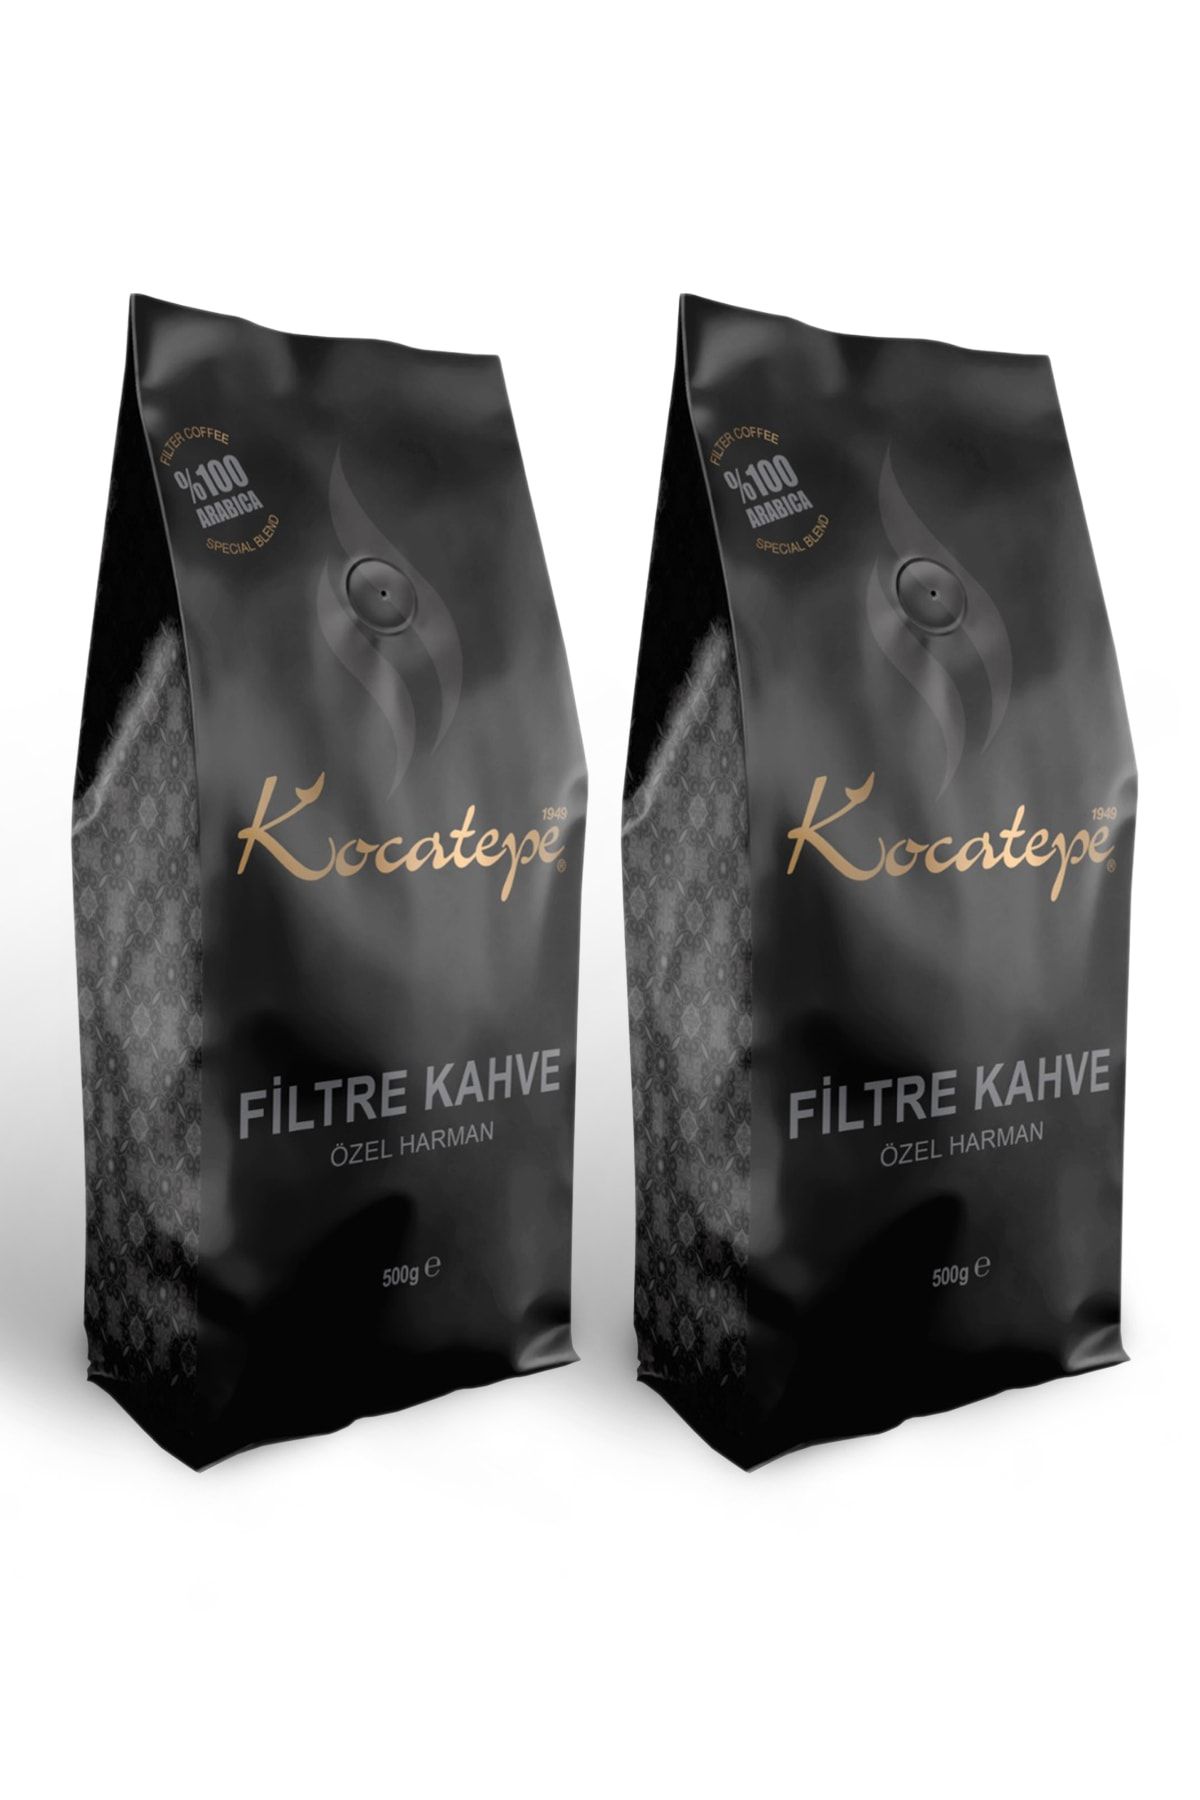 KOCATEPE KAHVE Filtre 500g. 1+1 Paket